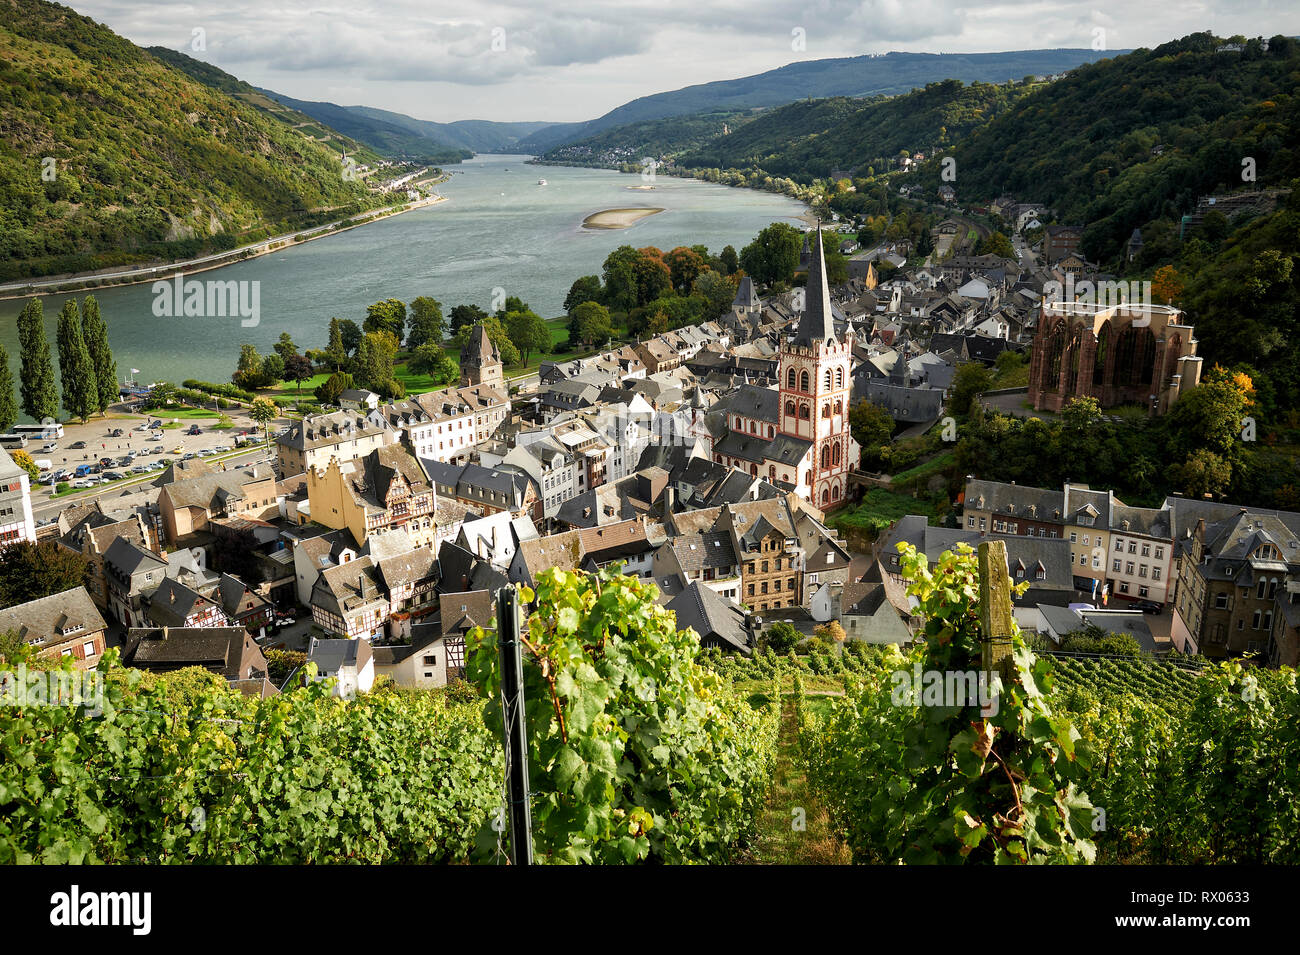 Blick auf Bacherach am Rhein von einem Weinberg aus. Stock Photo